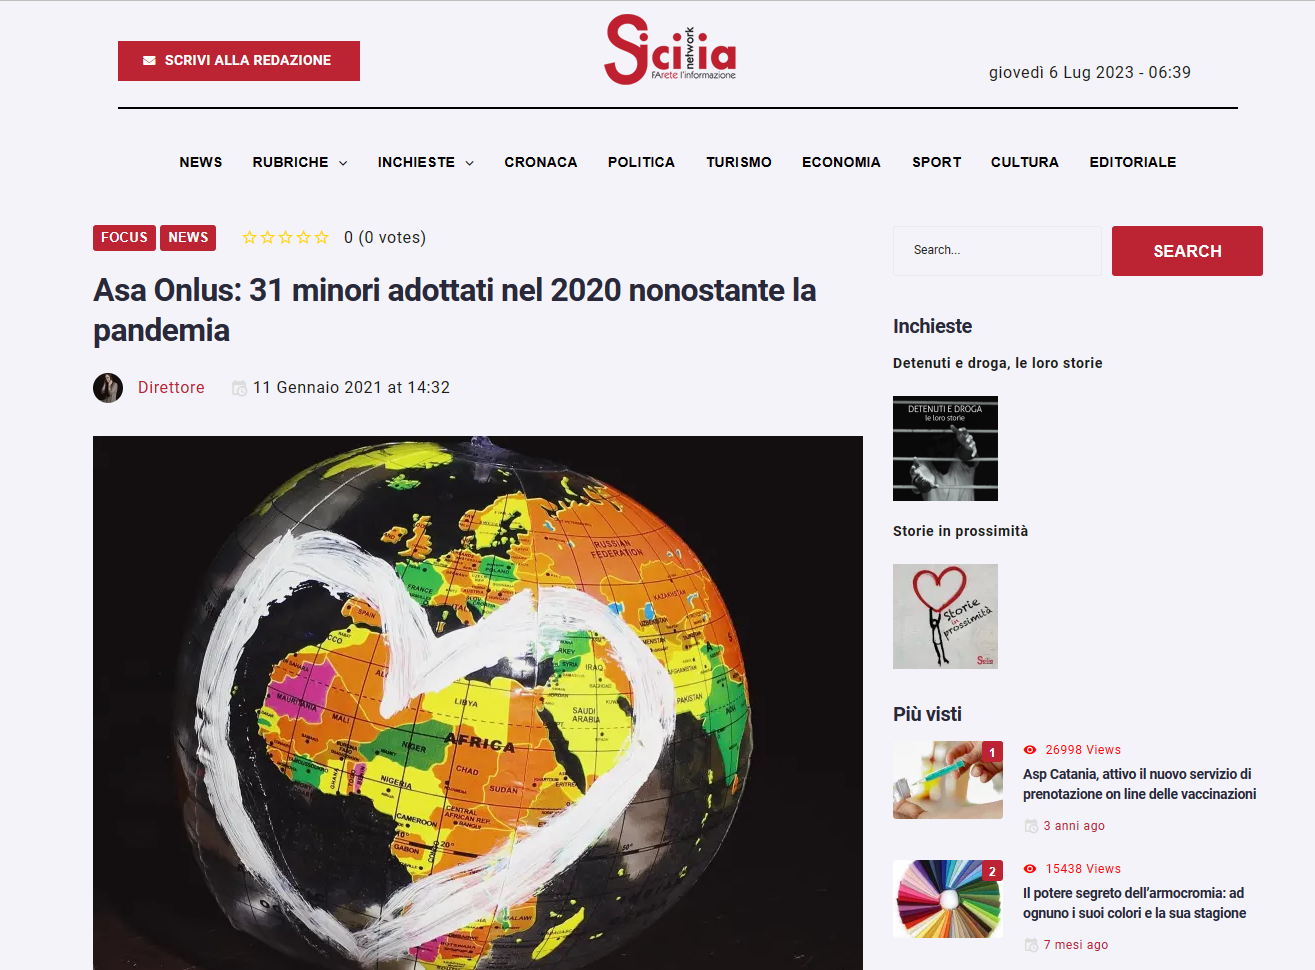 SICILIA NETWORK – 11 GENNAIO 2021